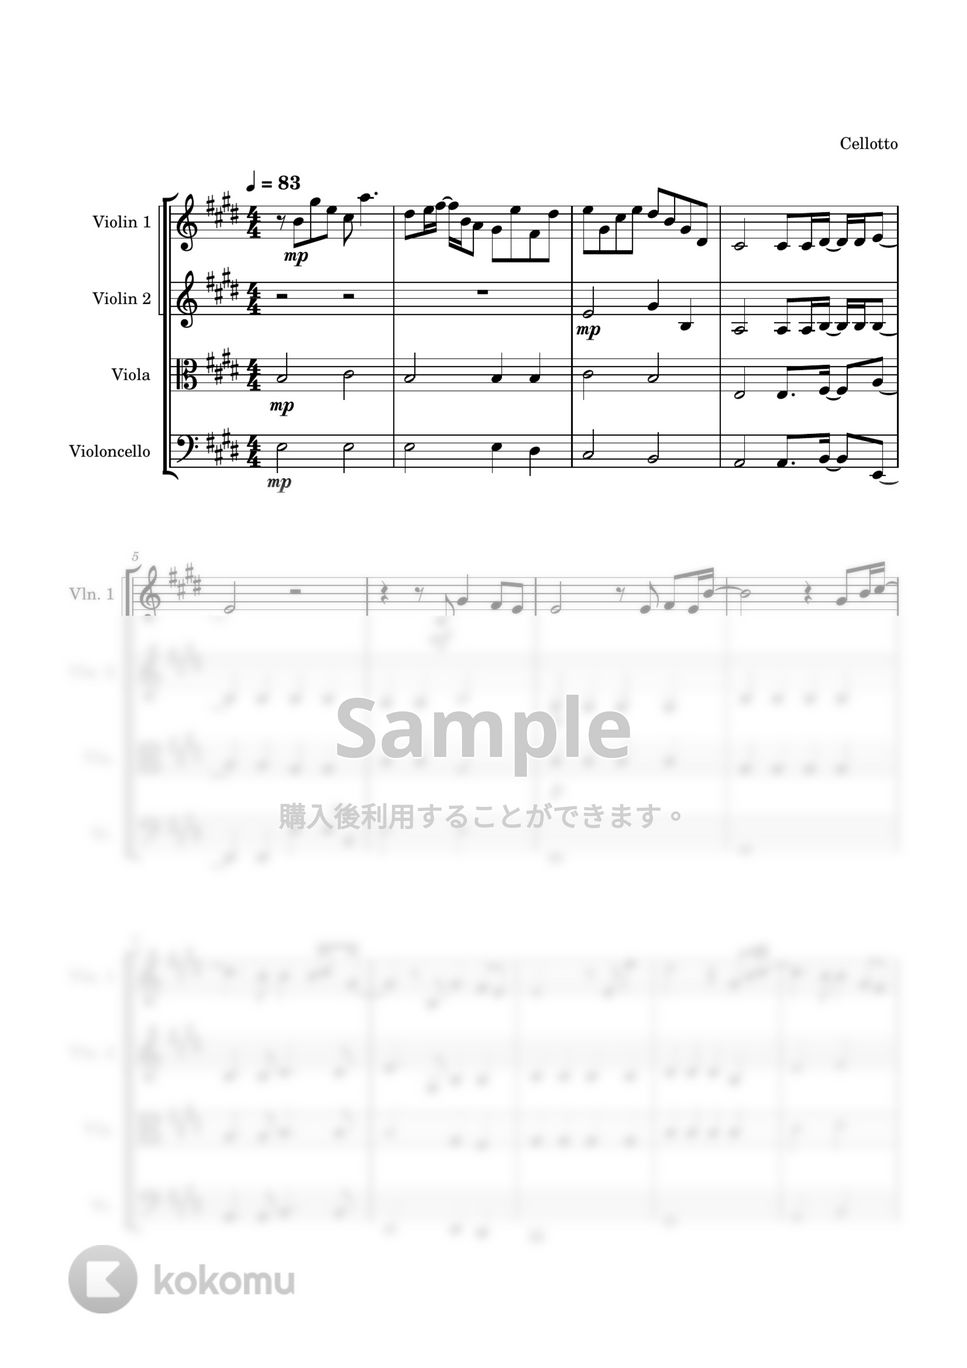 ゆず - 栄光の架橋 (弦楽四重奏) by Cellotto